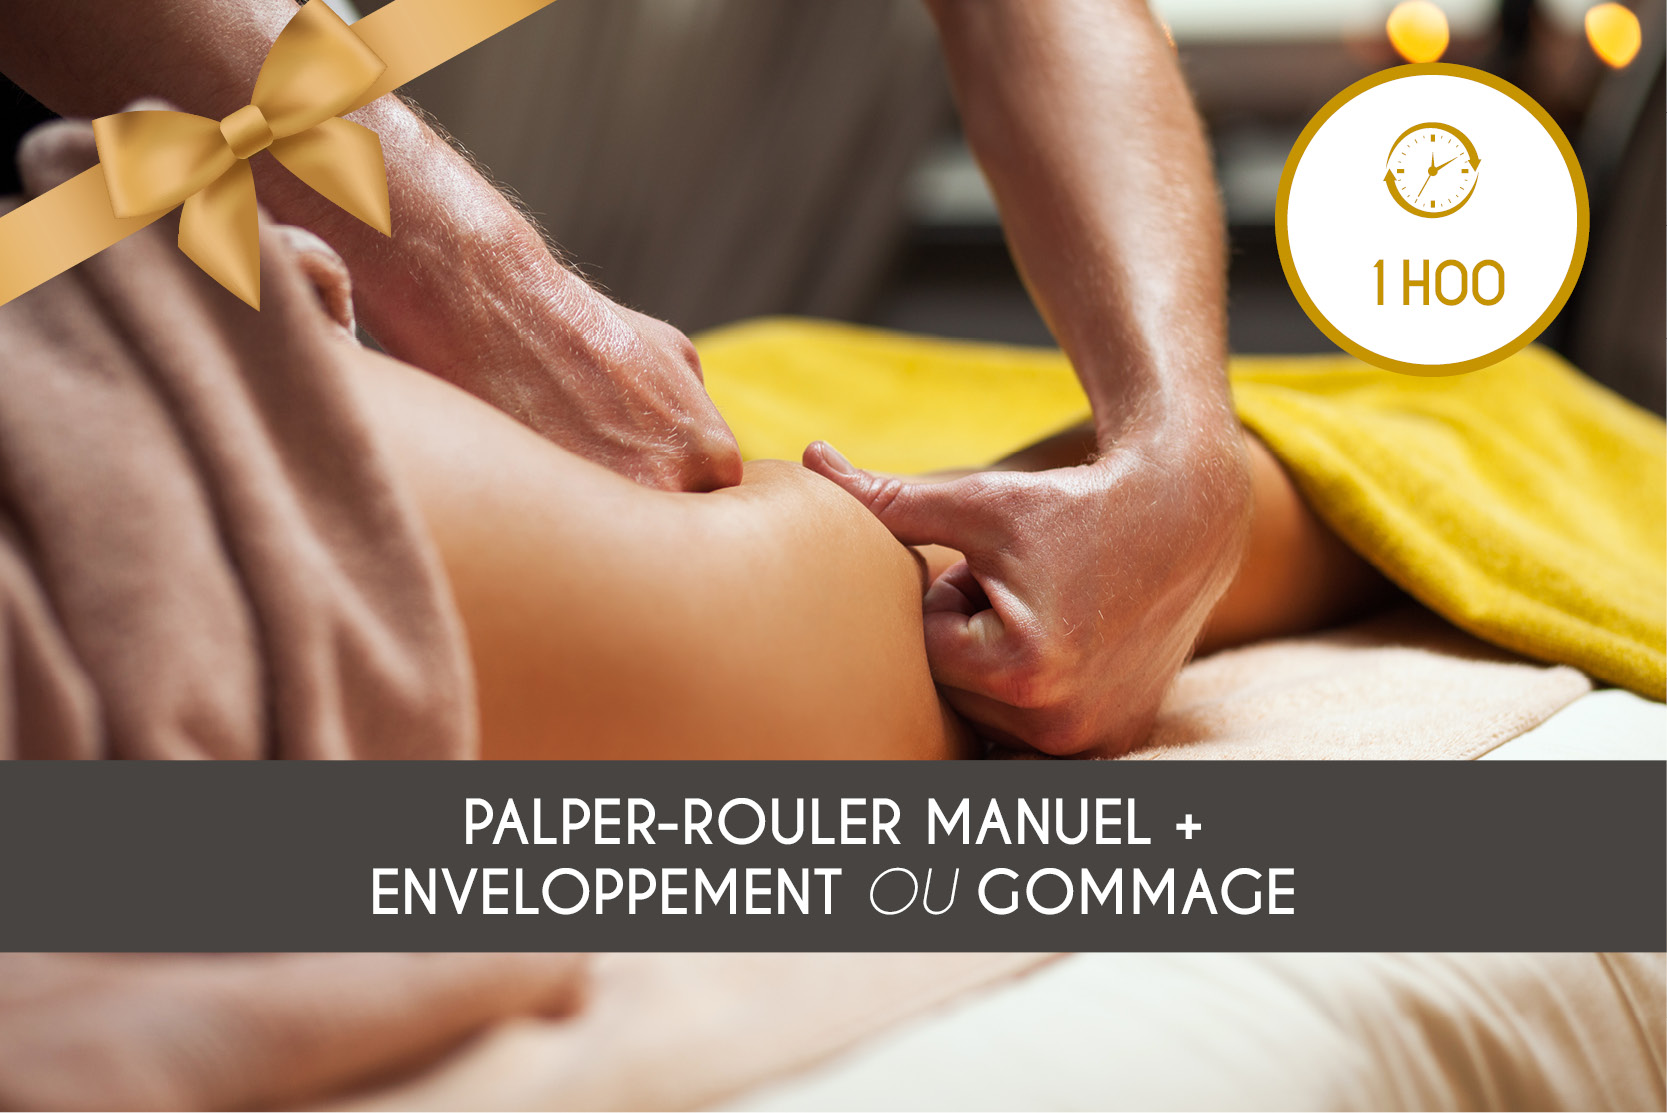 Palper-Rouler Manuel + Enveloppement OU Gommage (1h00)